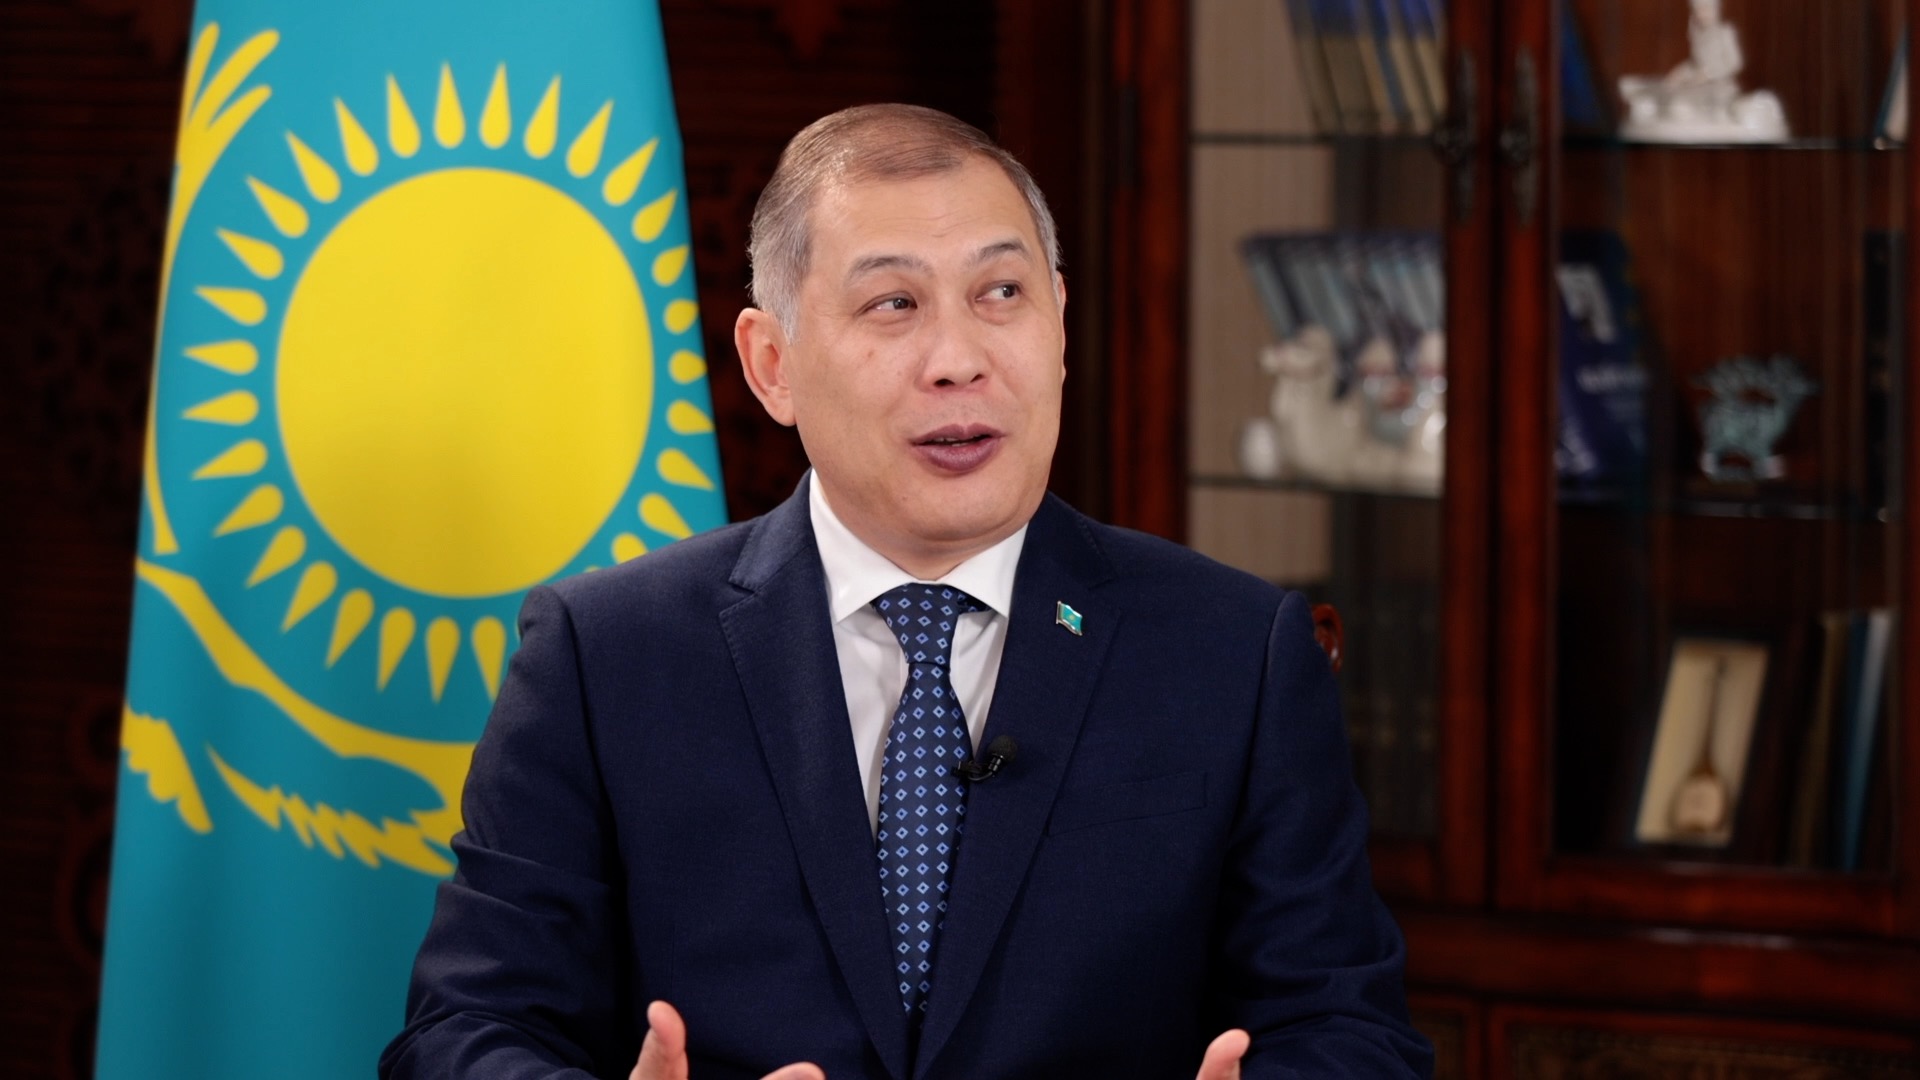 Shakhrat Nuryshev, the Kazakh Ambassador to China. /CGTN